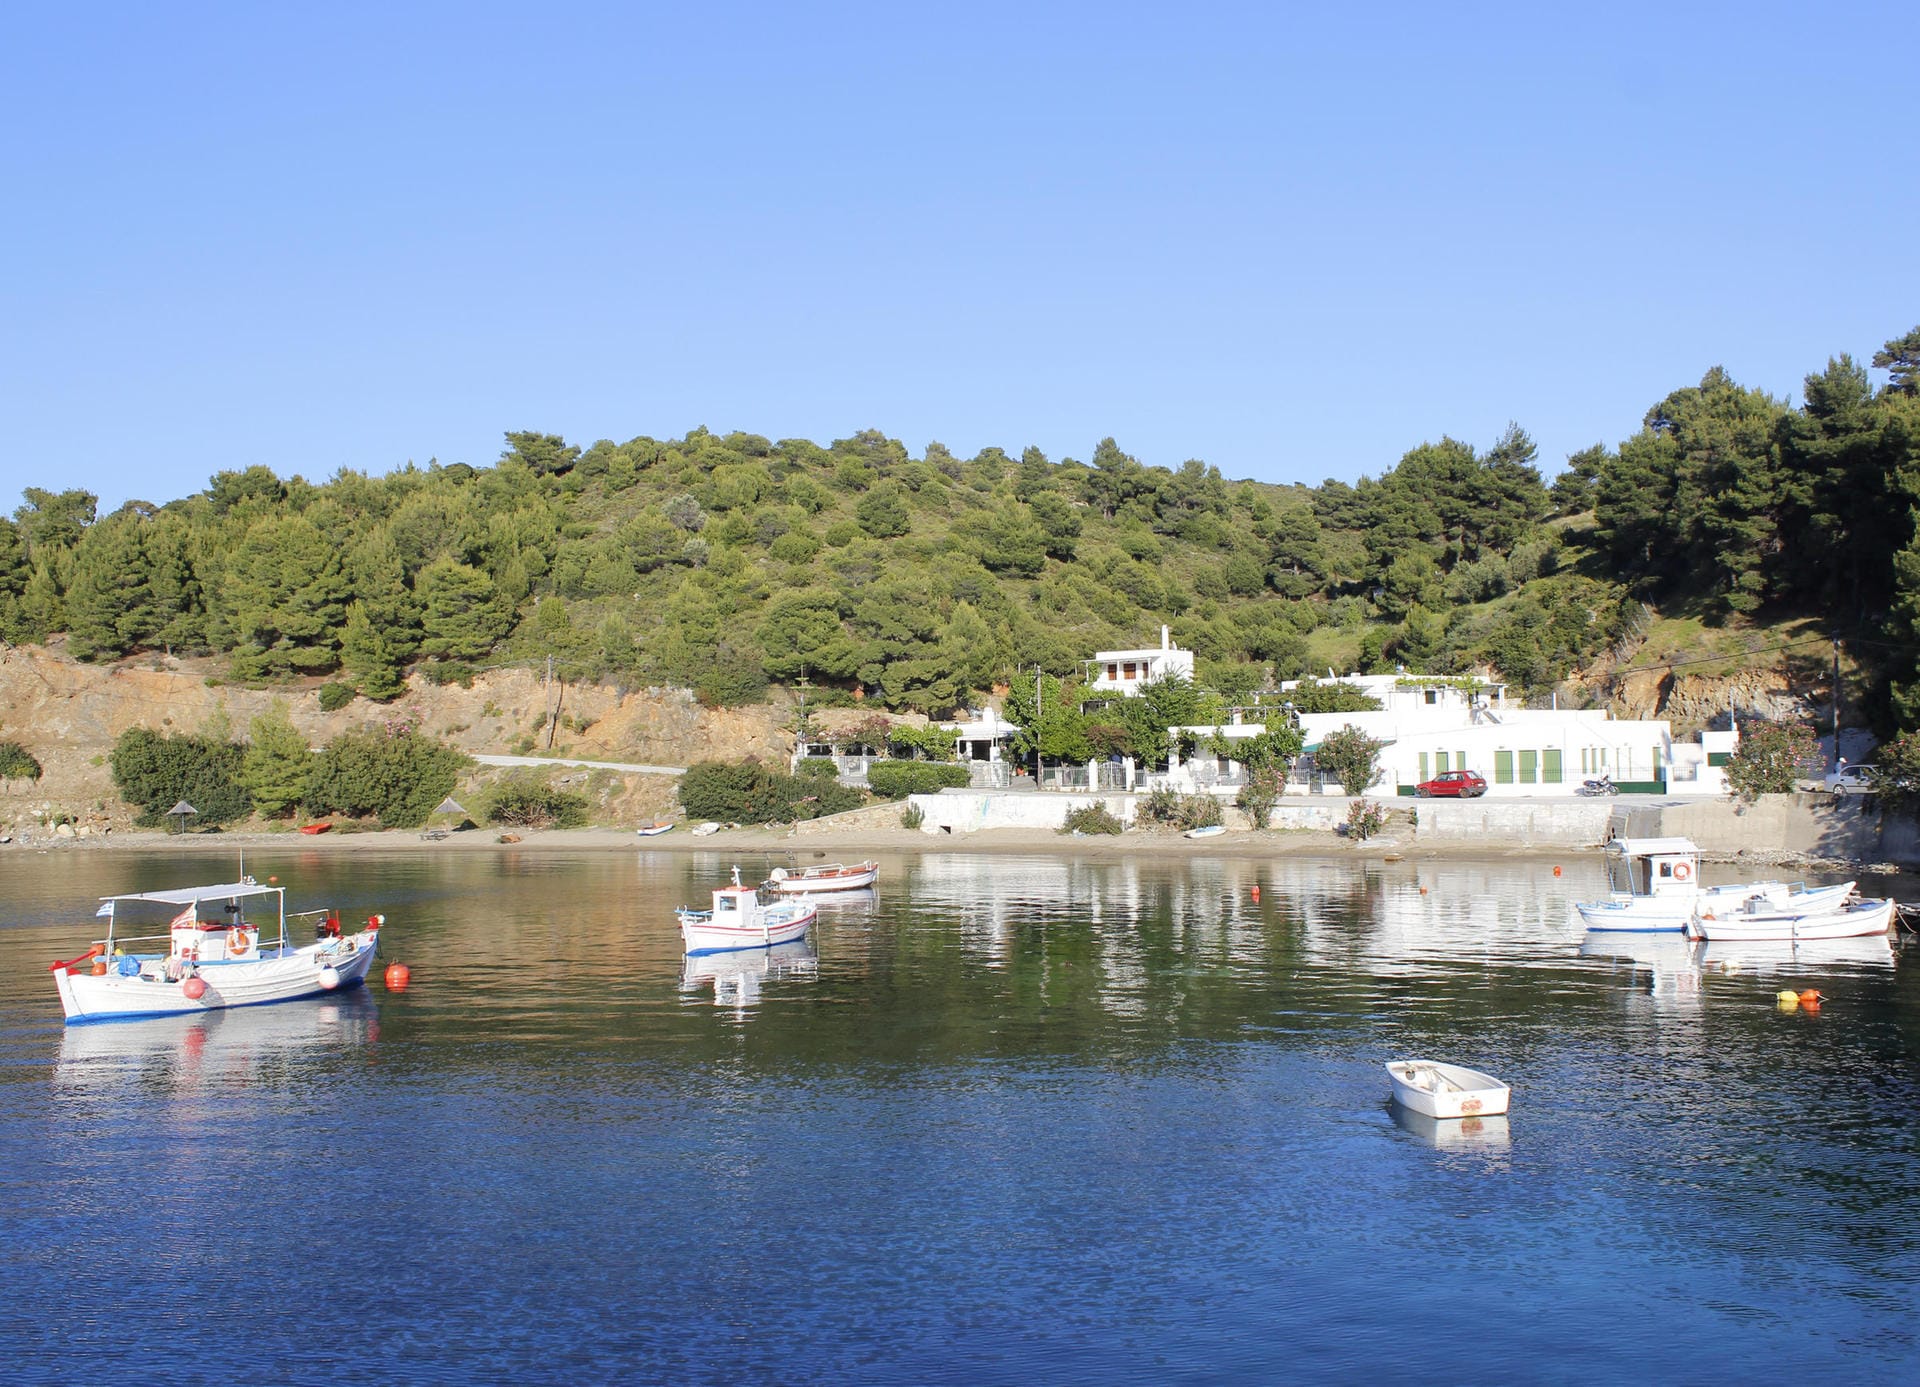 Pefkos ist in der Mitte der Insel gelegen und dient als Ausgangsort für Segeltörns und Ausflugsboote.